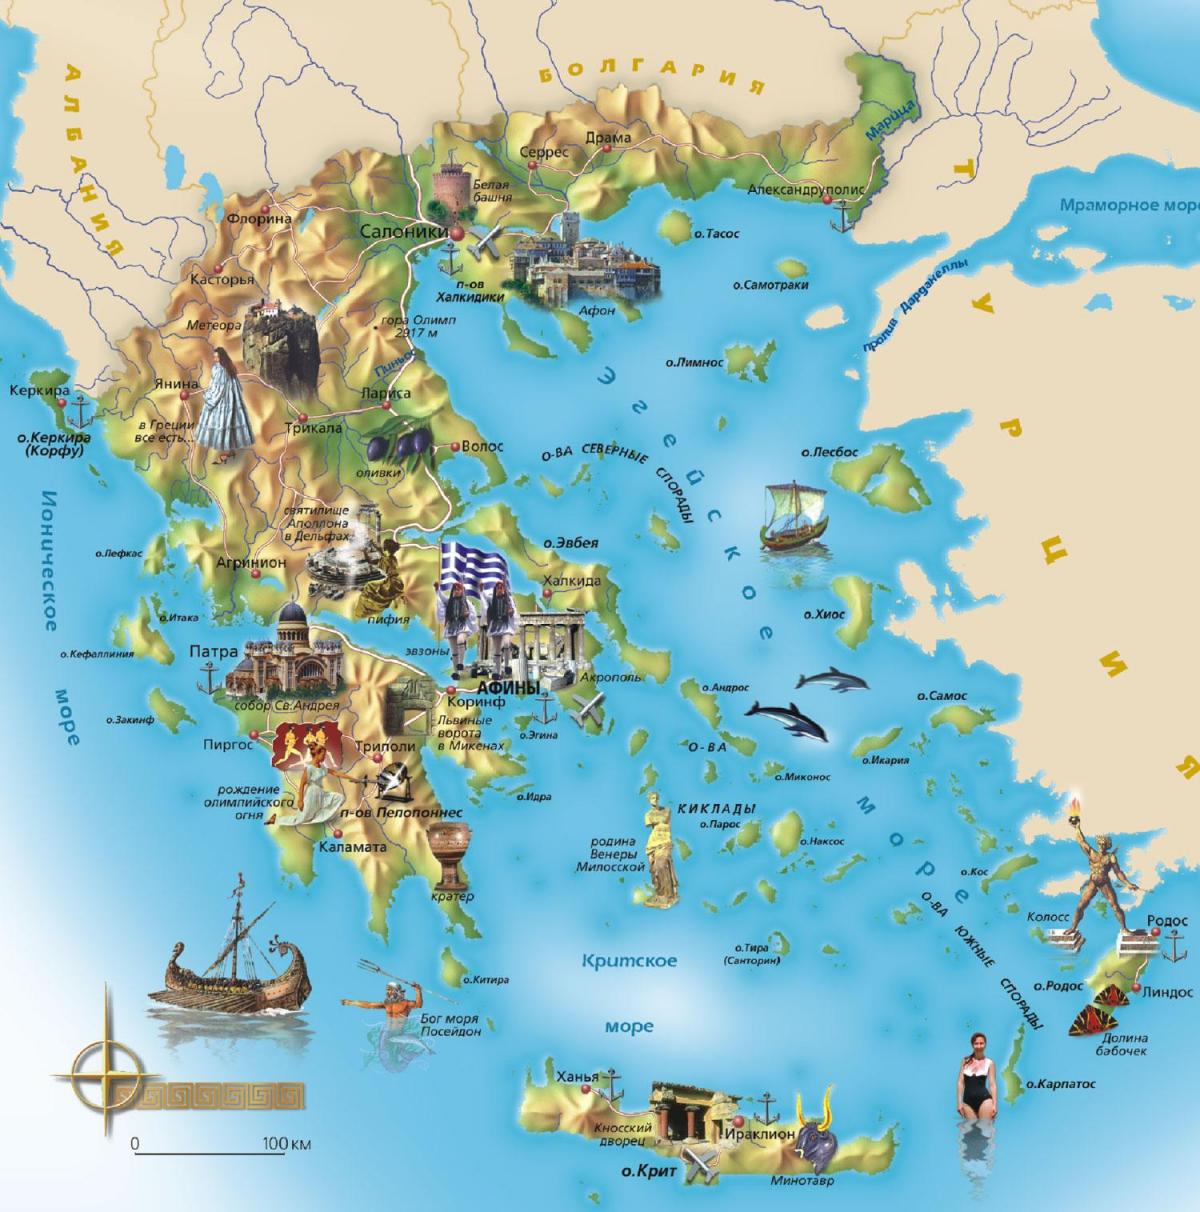 Griekenland toeristische attracties kaart